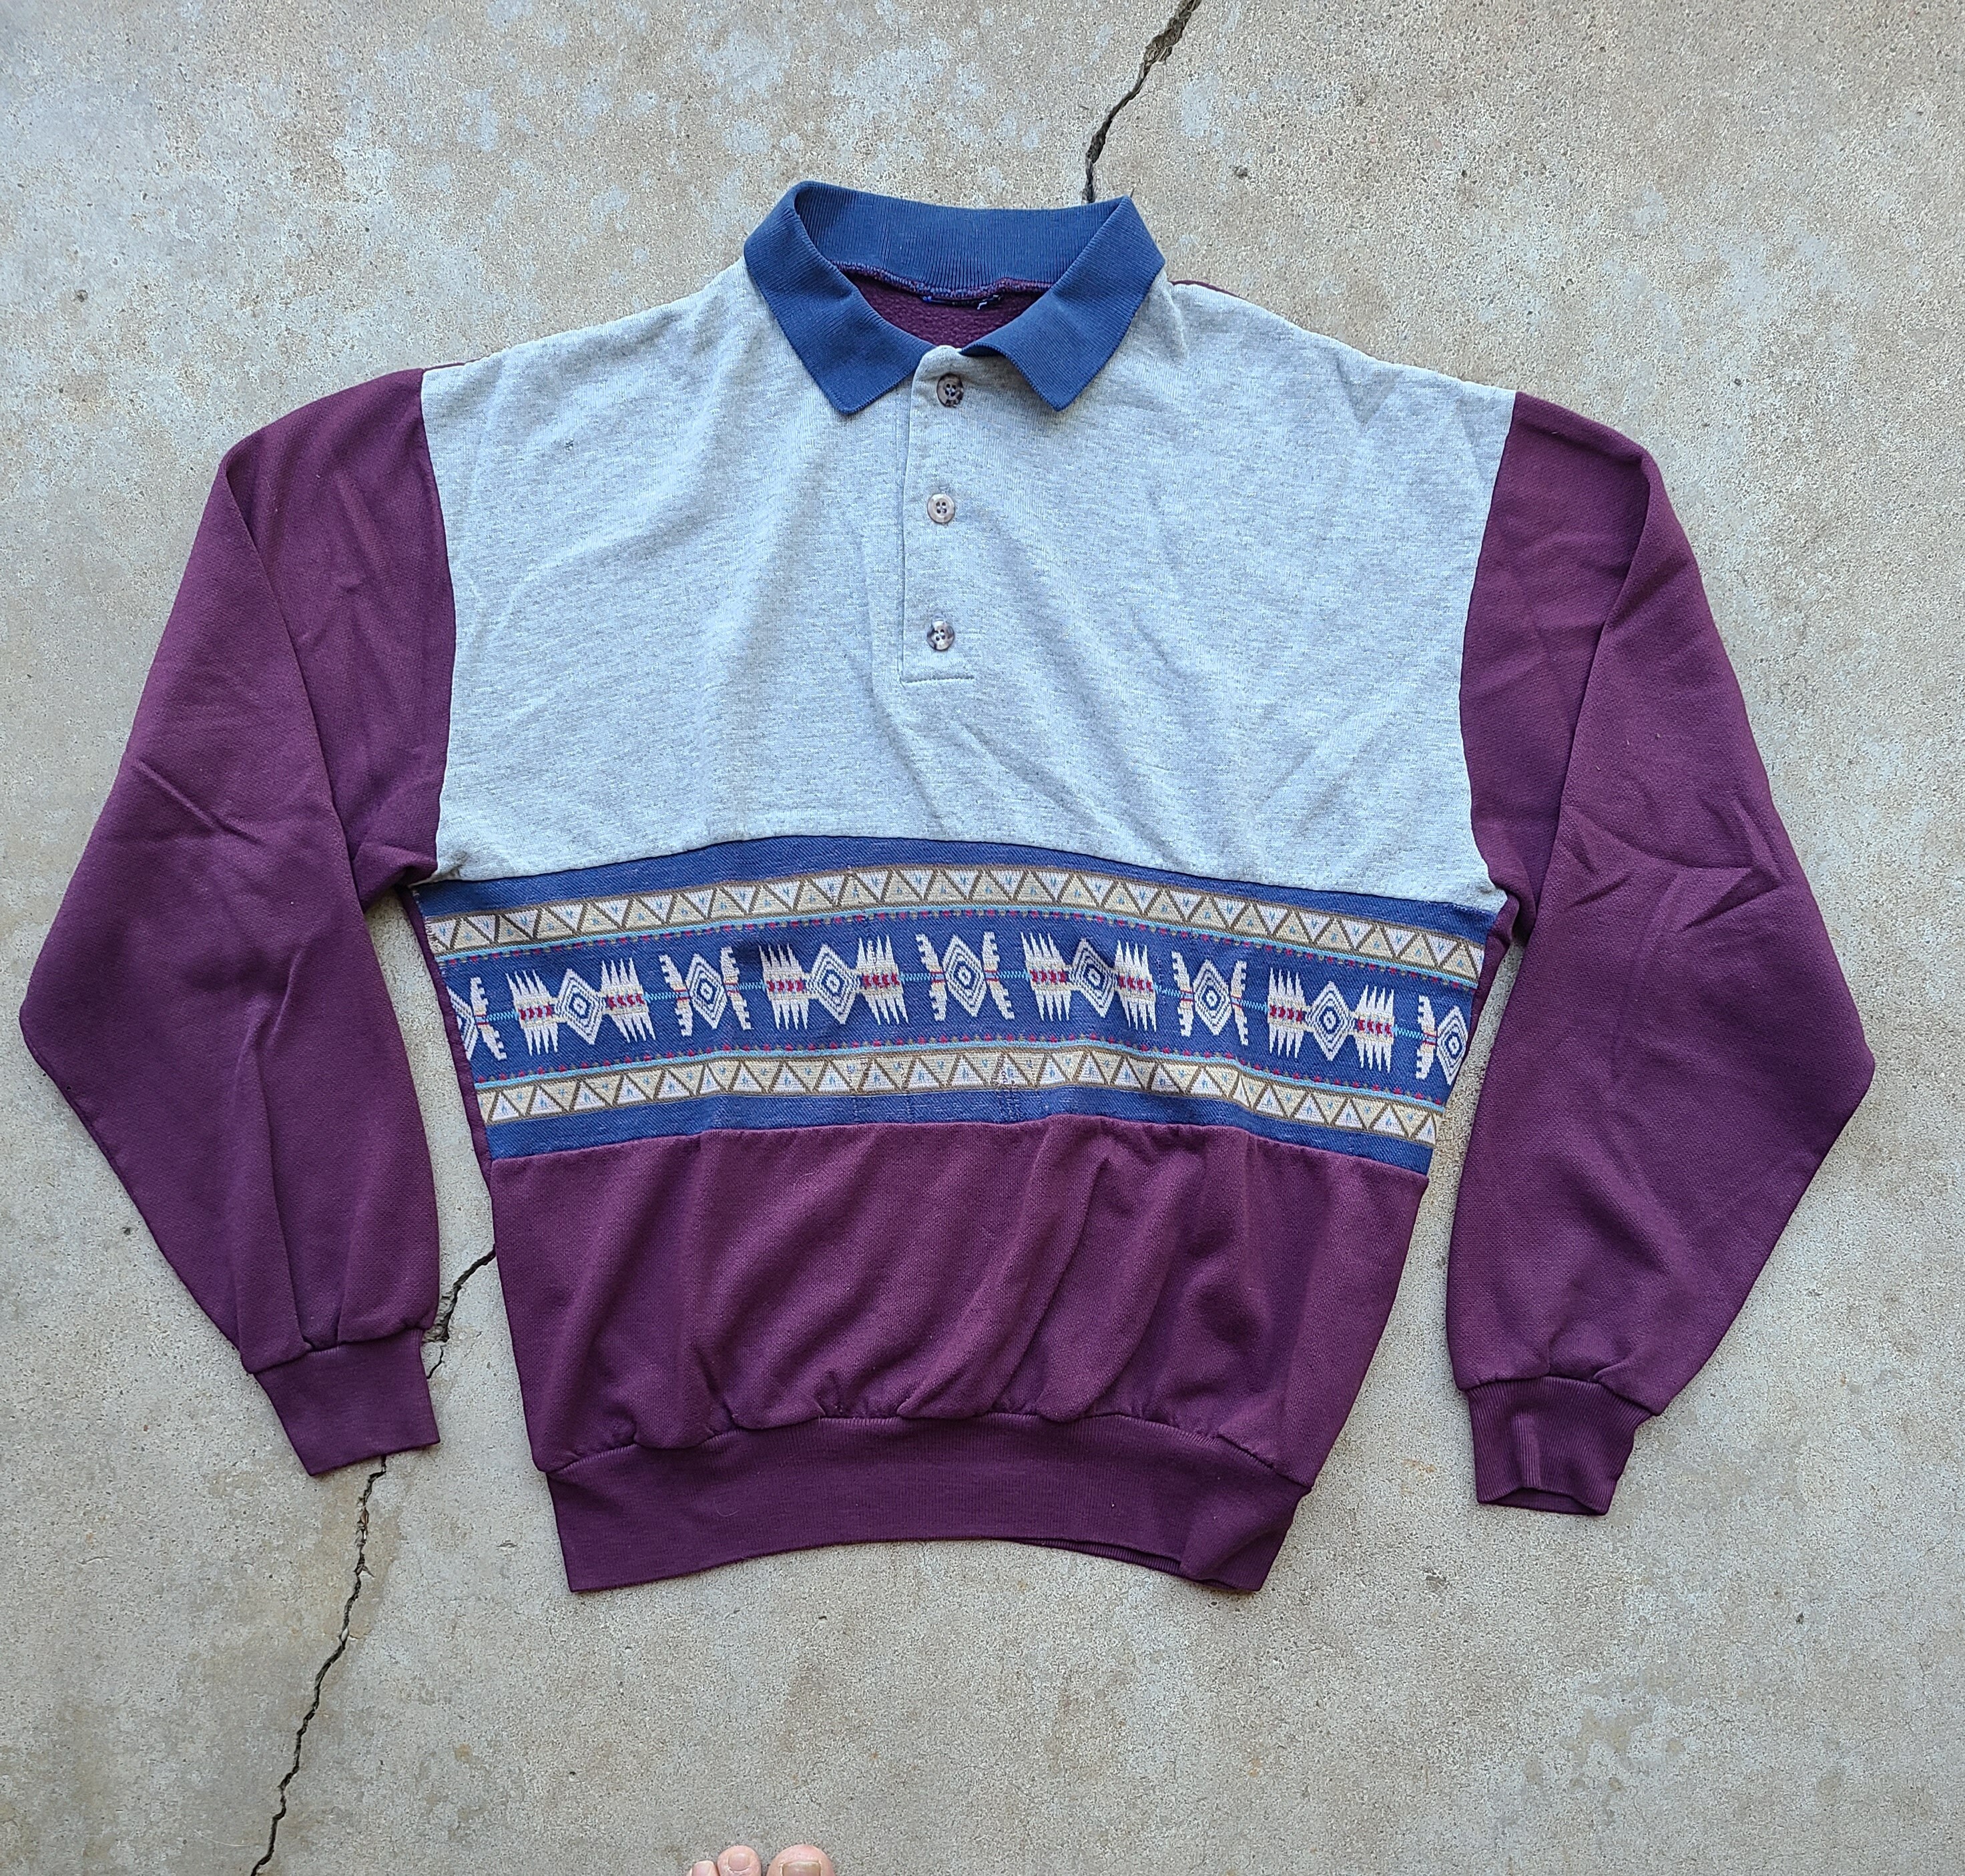 Vintage 80's Tri-Blend Collared Crew Neck, Sweatshirt